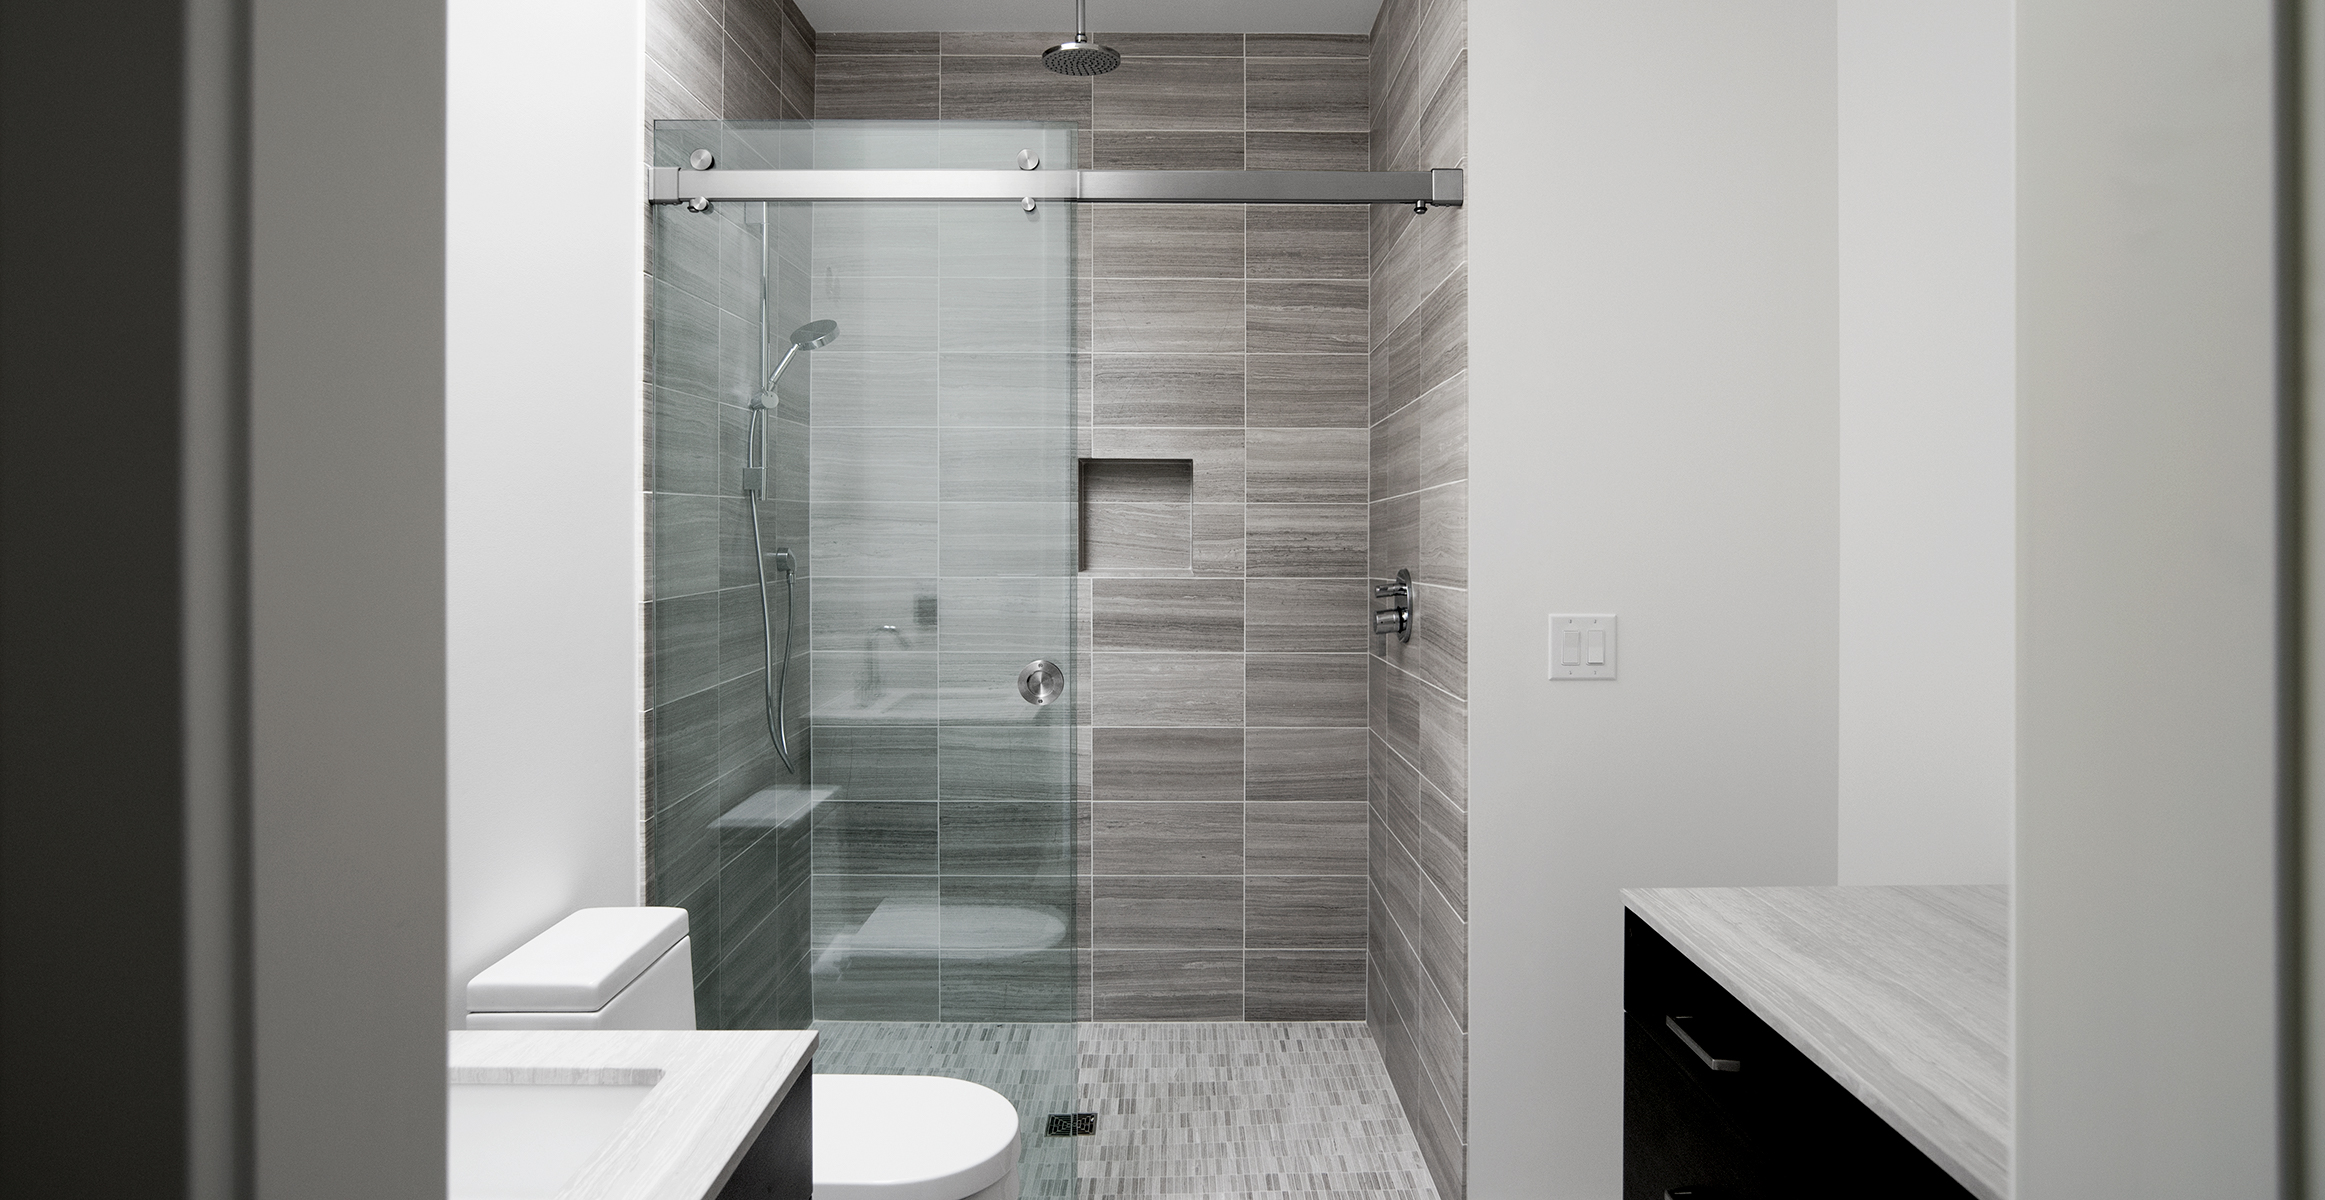 Frameless shower door system in Brushed Stainless finish.